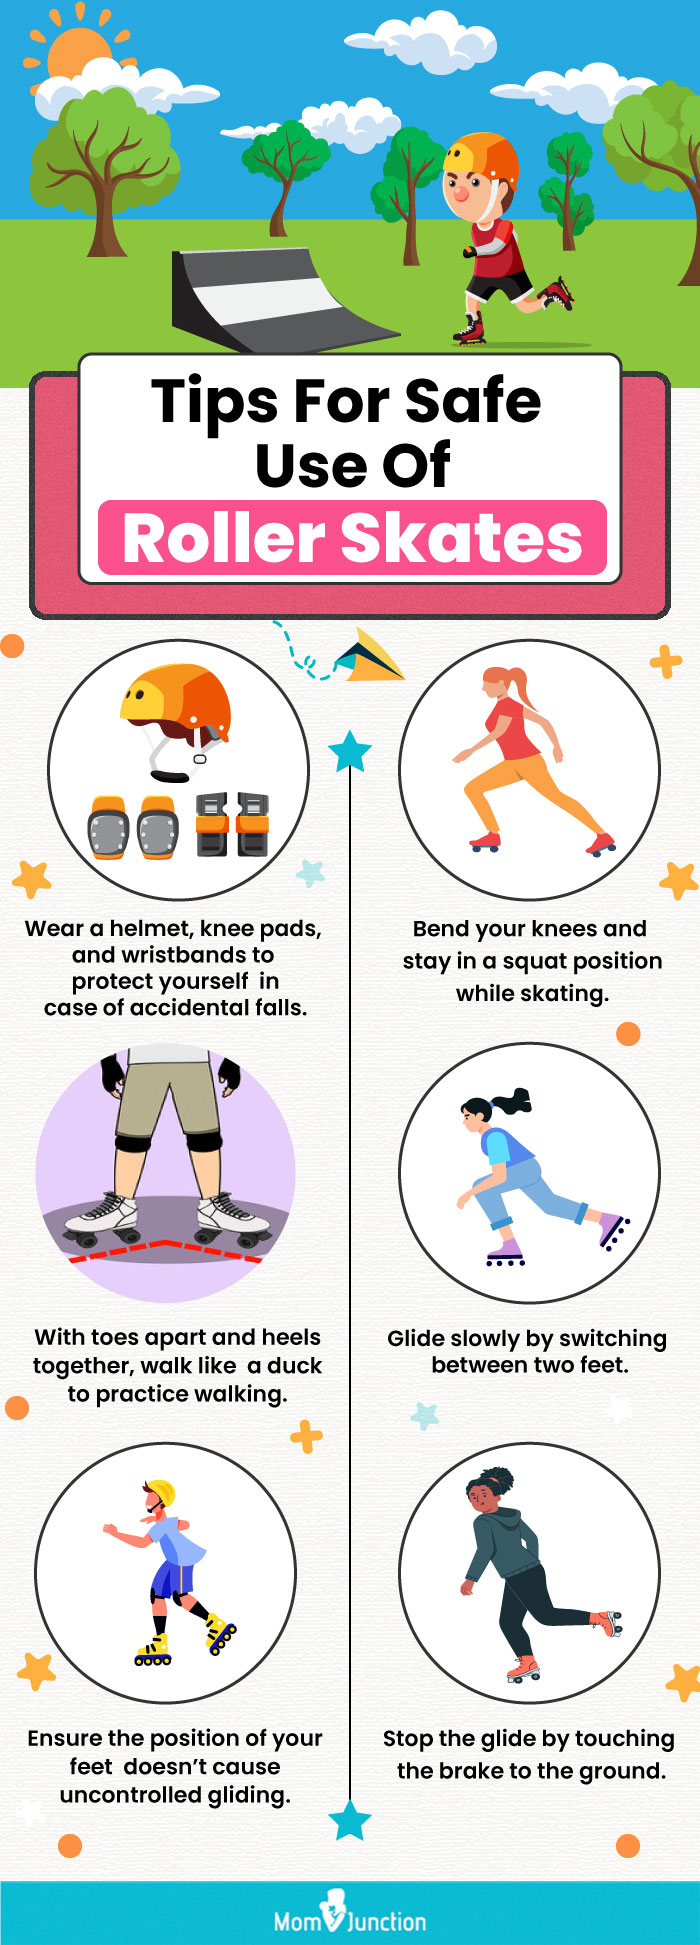 Tips For Safe Use Of Roller Skates